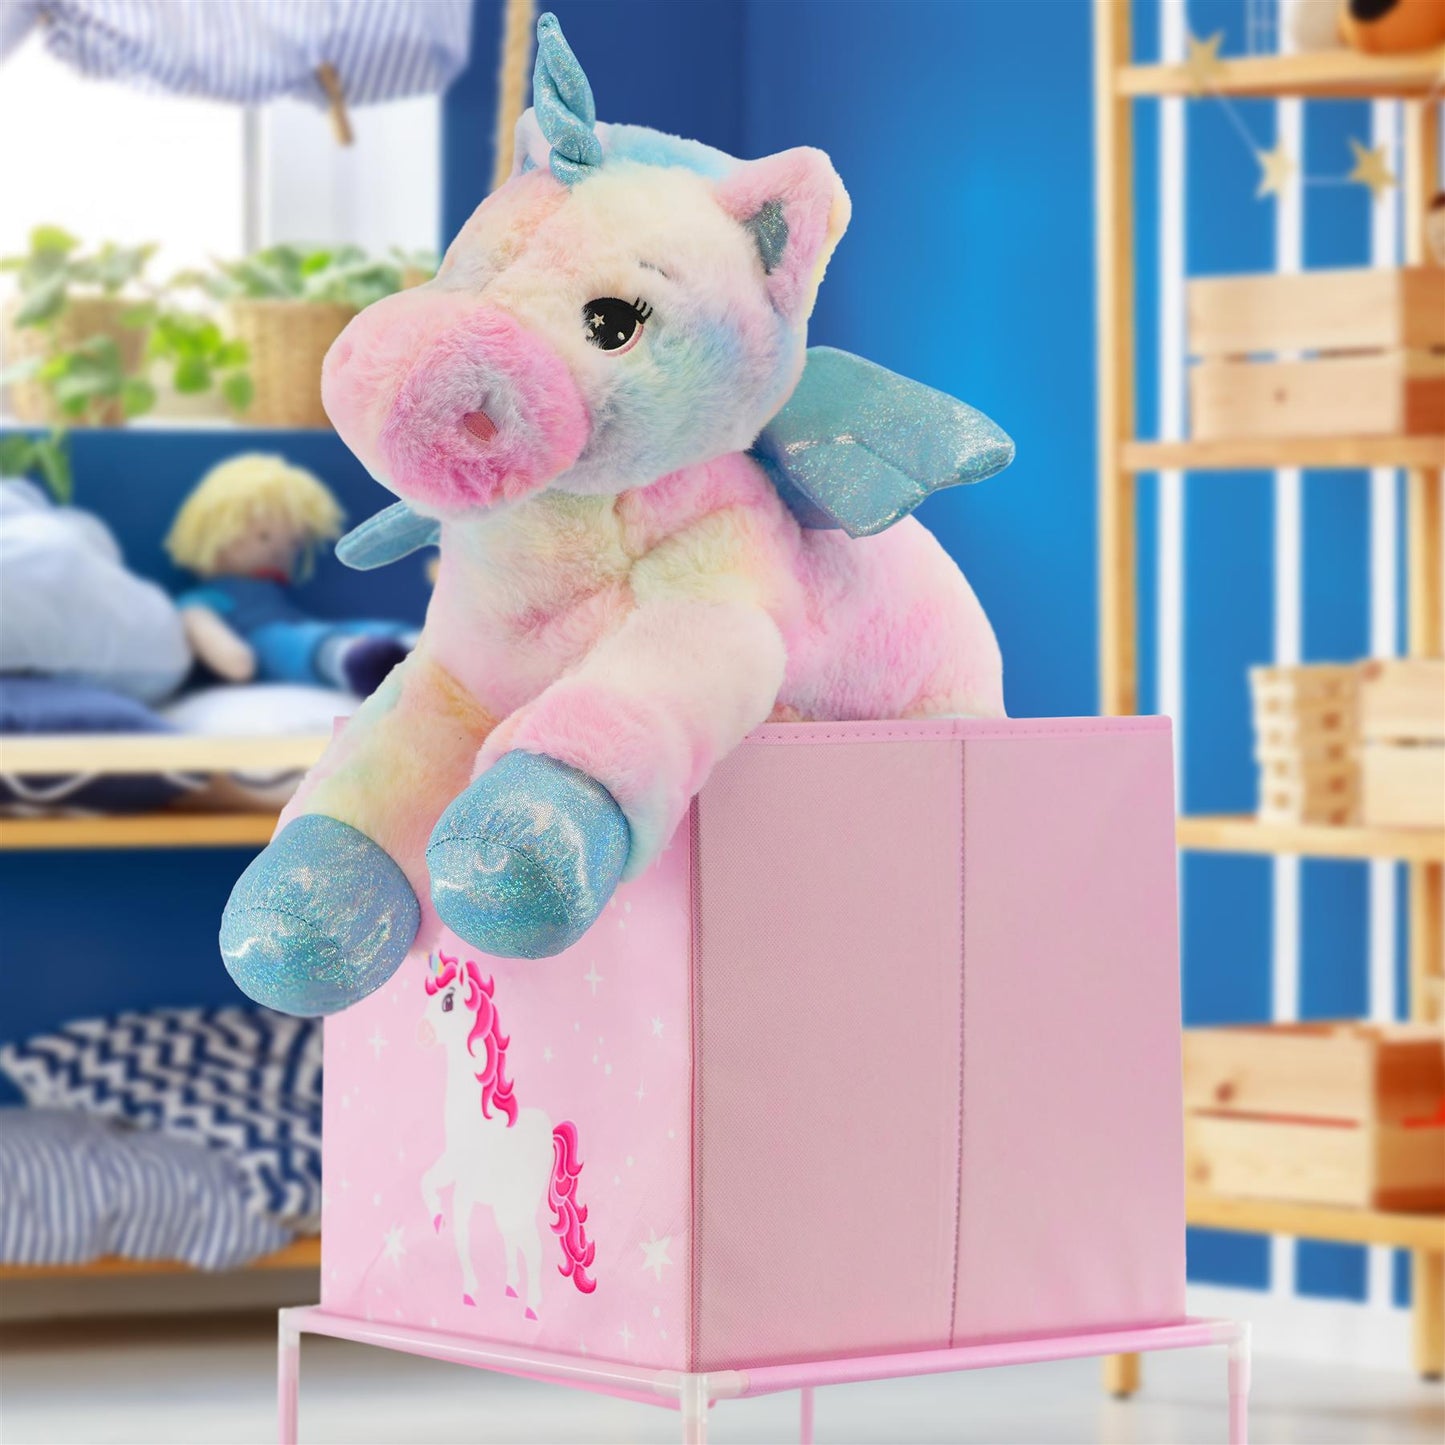 Kids Unicorn Design Storage Cubes by The Magic Toy Shop - UKBuyZone